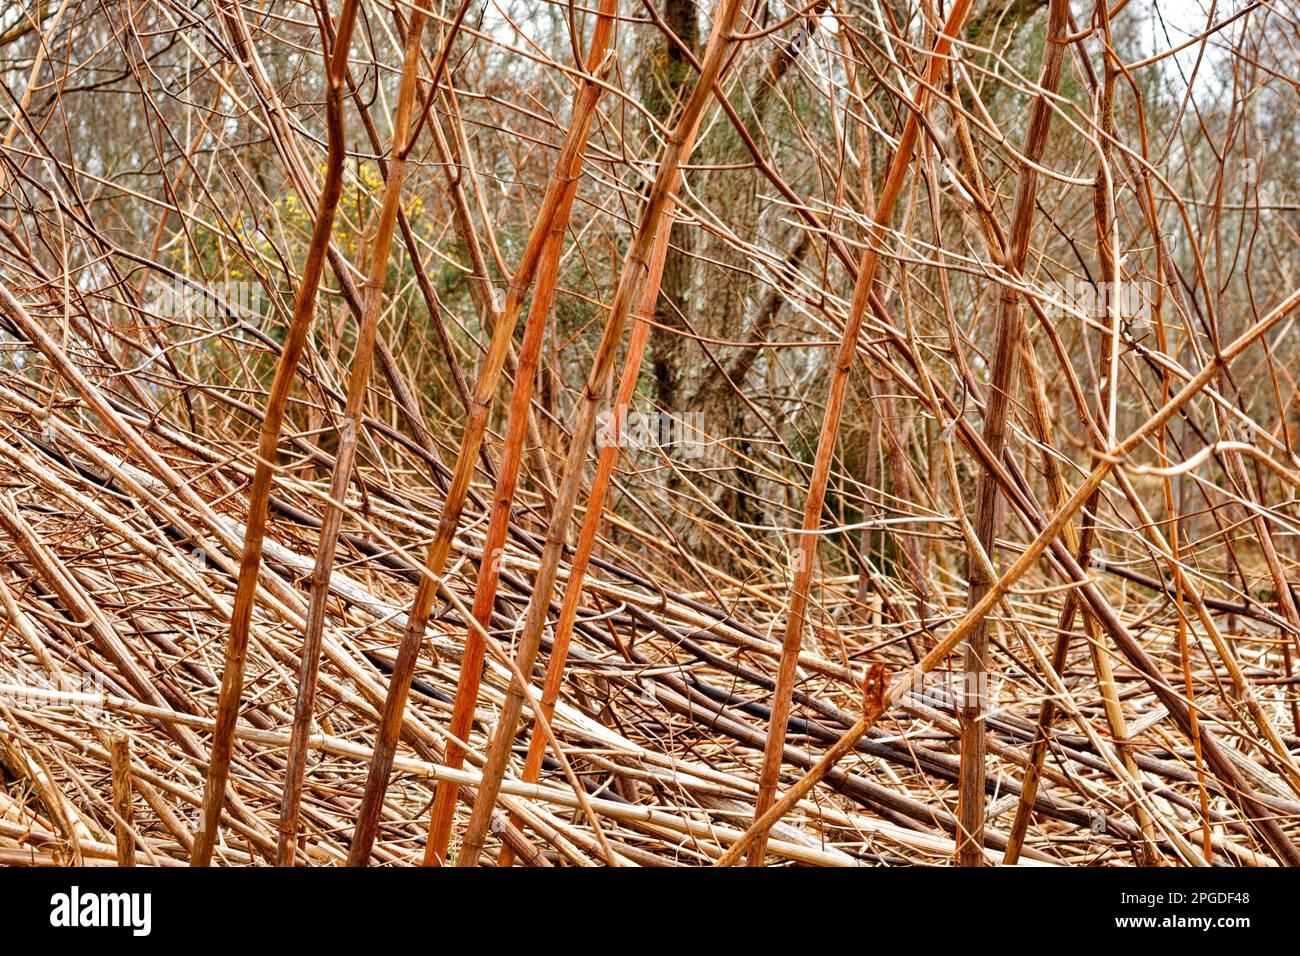 RIGOLE JAPONAISE Reynoutria japonica 3 mètres de haut brun sans feuilles tiges mortes de la plante en hiver Banque D'Images